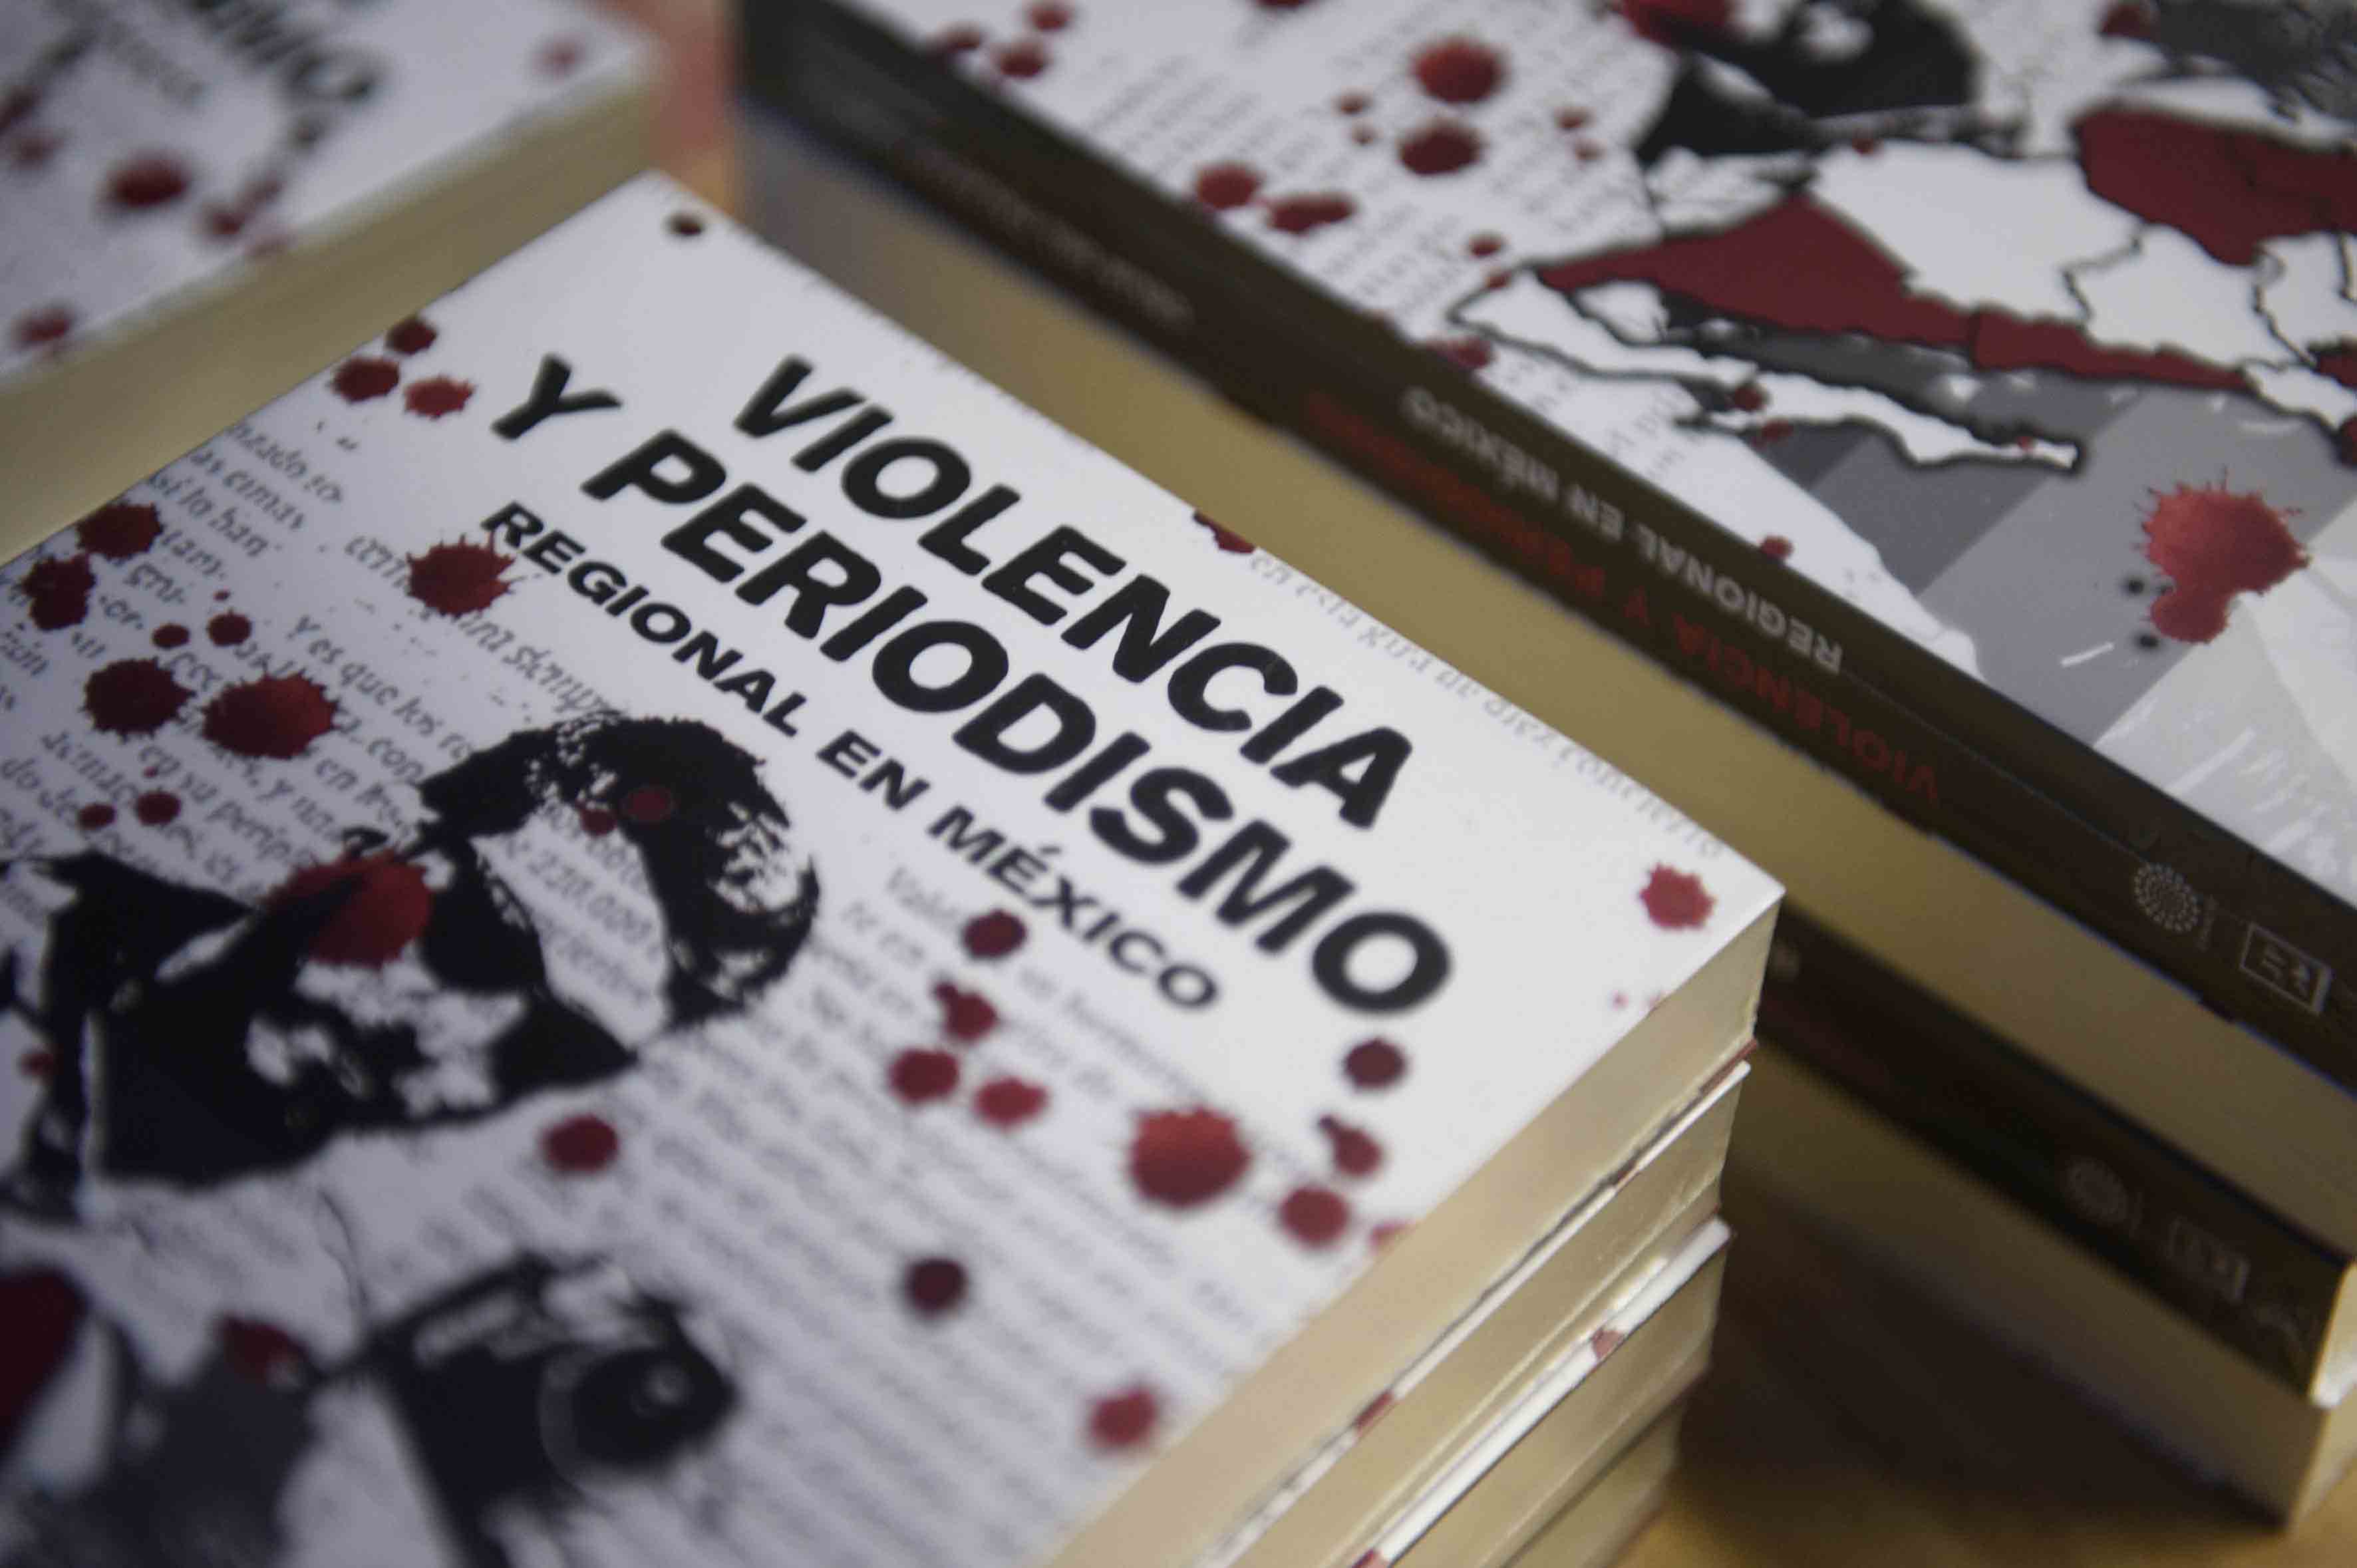  Sociedad Interamericana de Prensa denuncia ataques contra periodistas mexicanos; uno, corresponsal de ‘The Guardian’